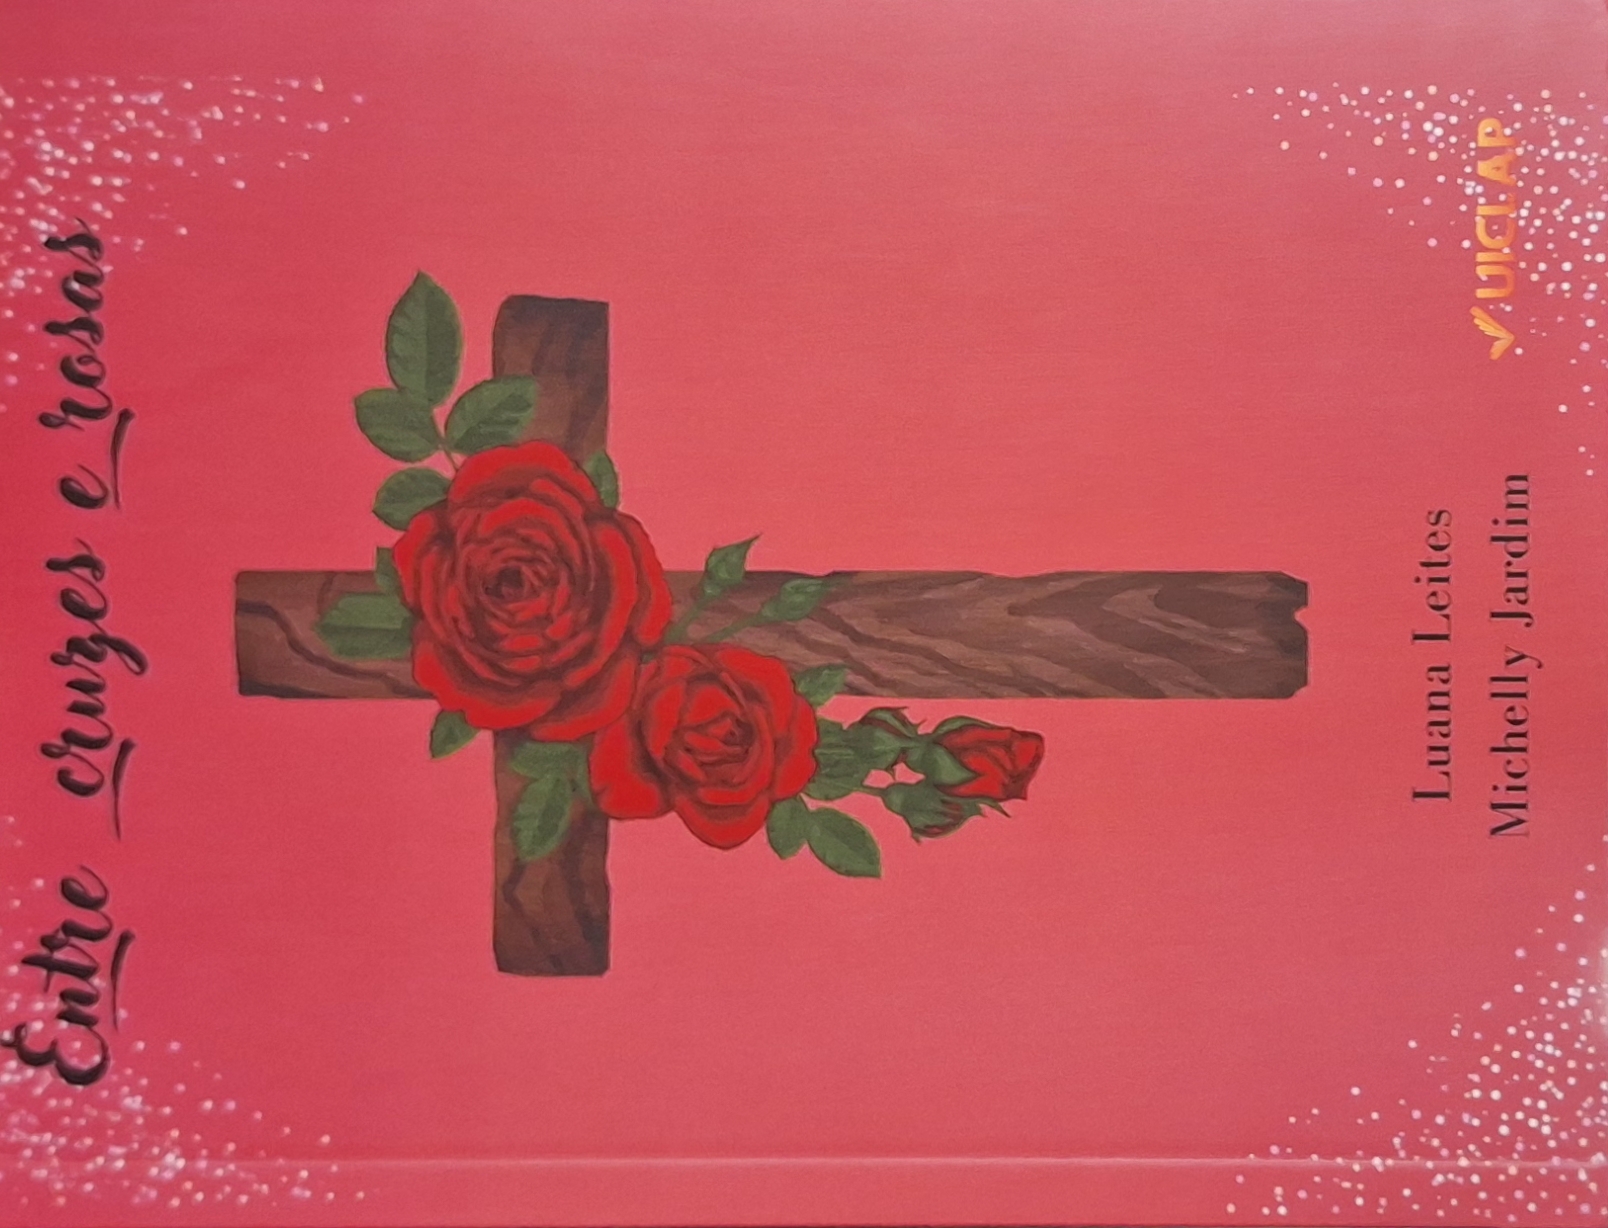 Capa do livro, "Entre cruzes e rosas", em coautoria de Luana Leites e Michelle Jardim, pela Editora Uiclap.